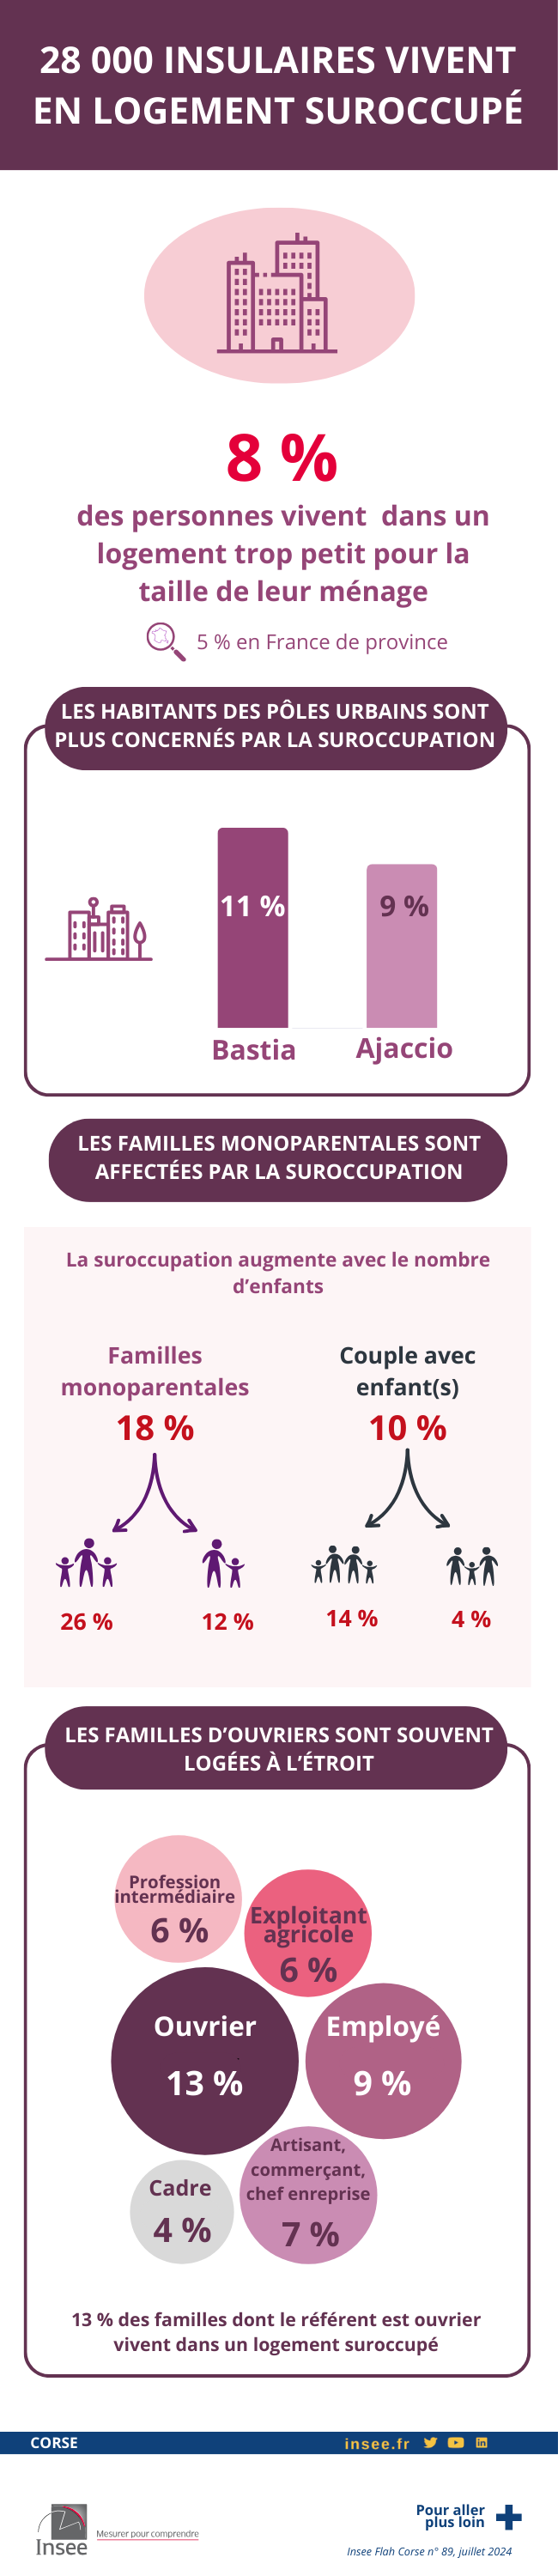 Infographie - En Corse, 28 000 personnes vivent dans un logement trop petit